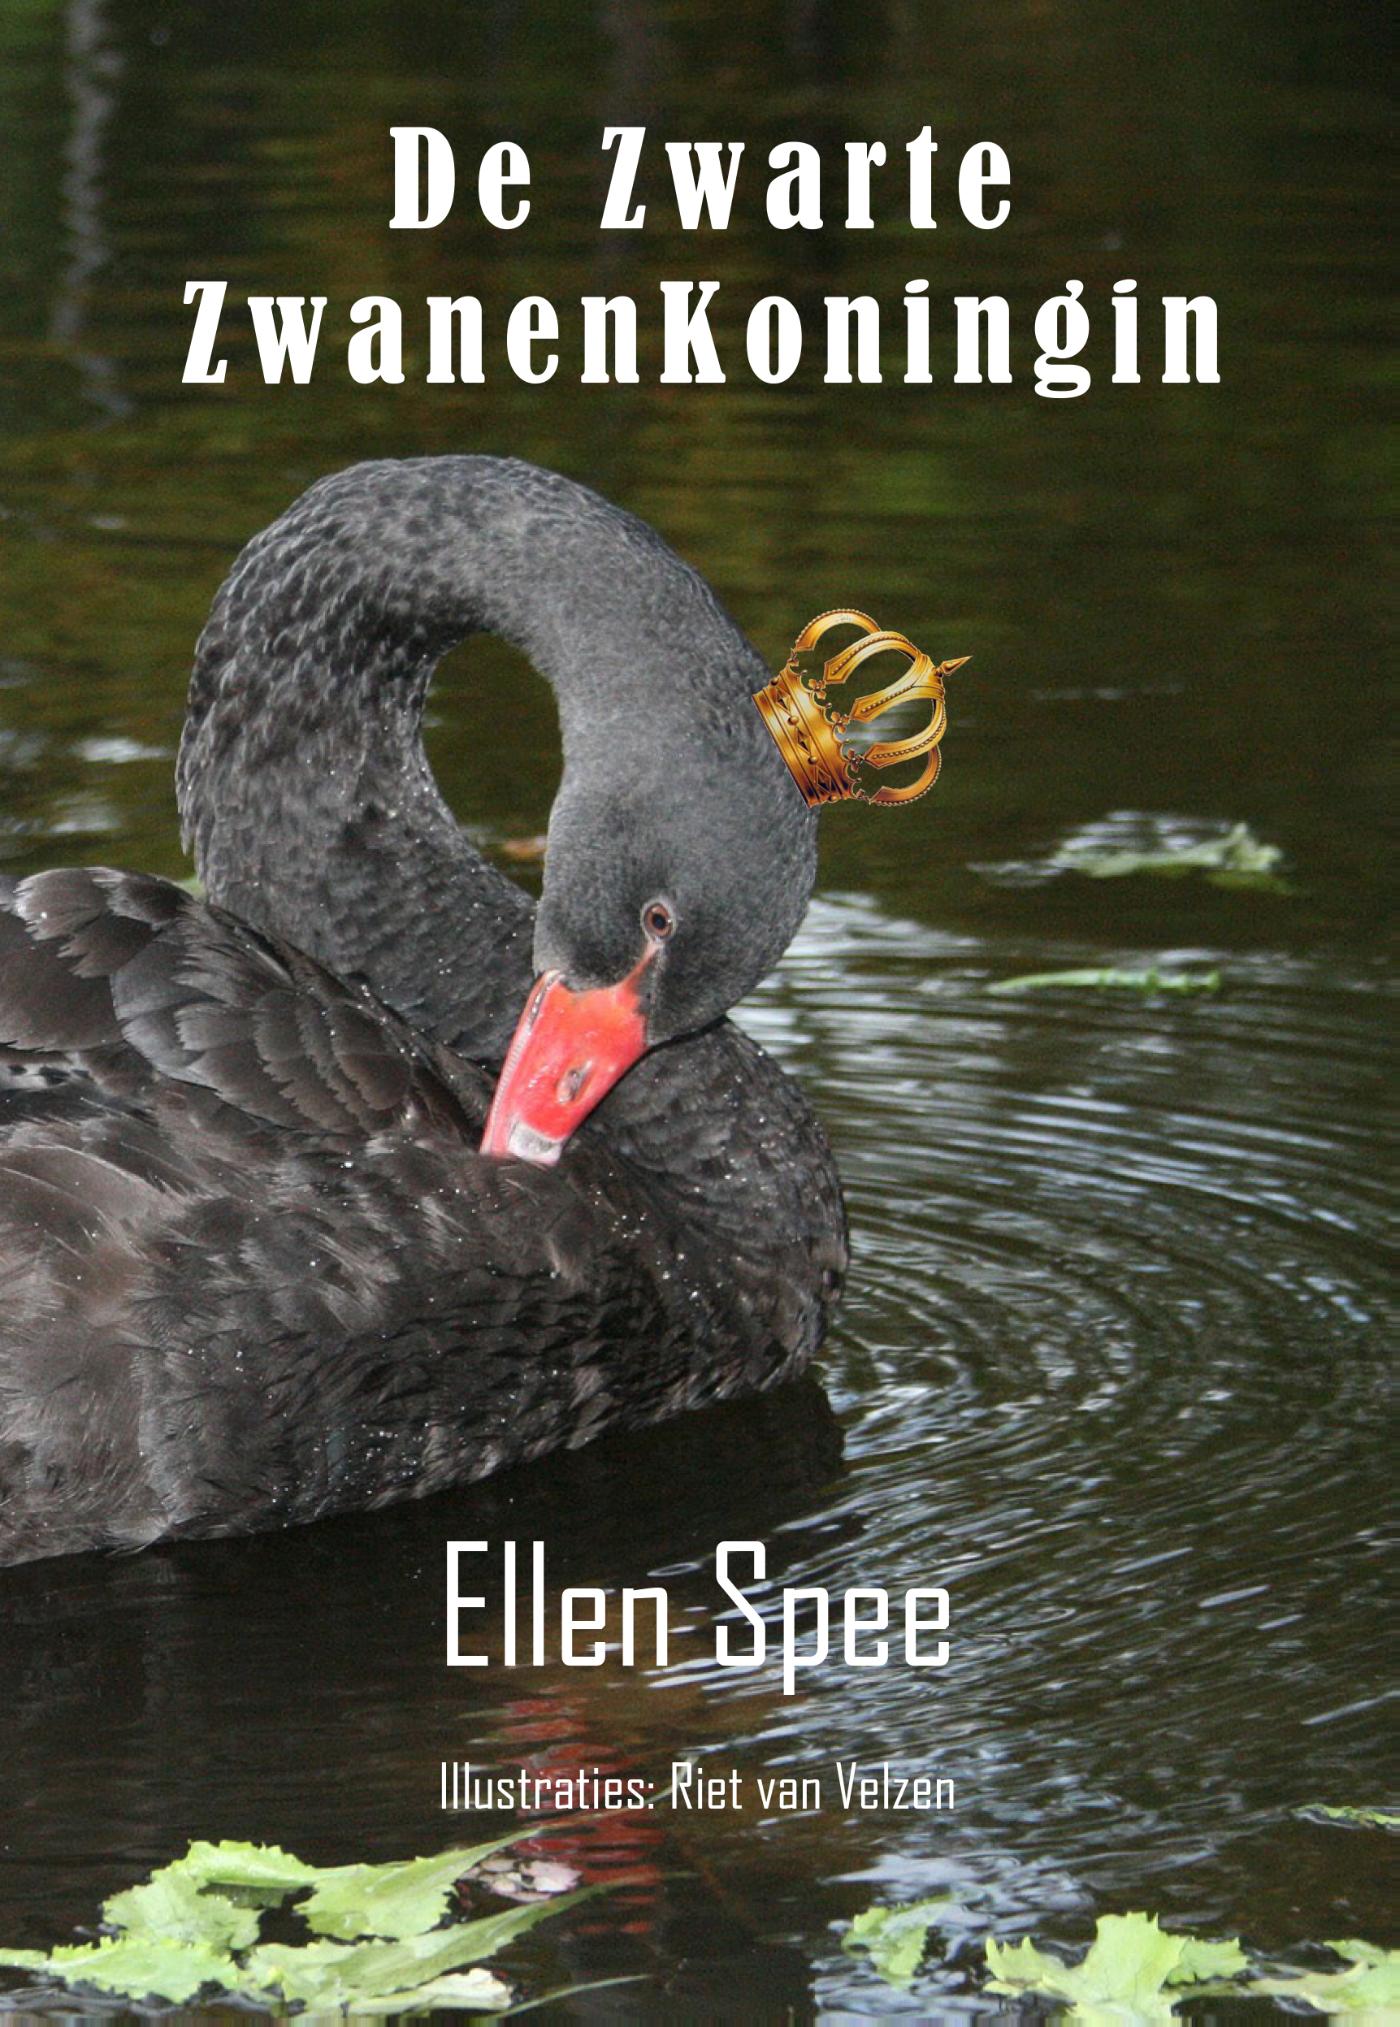 De zwarte zwanen koningin (Ebook)